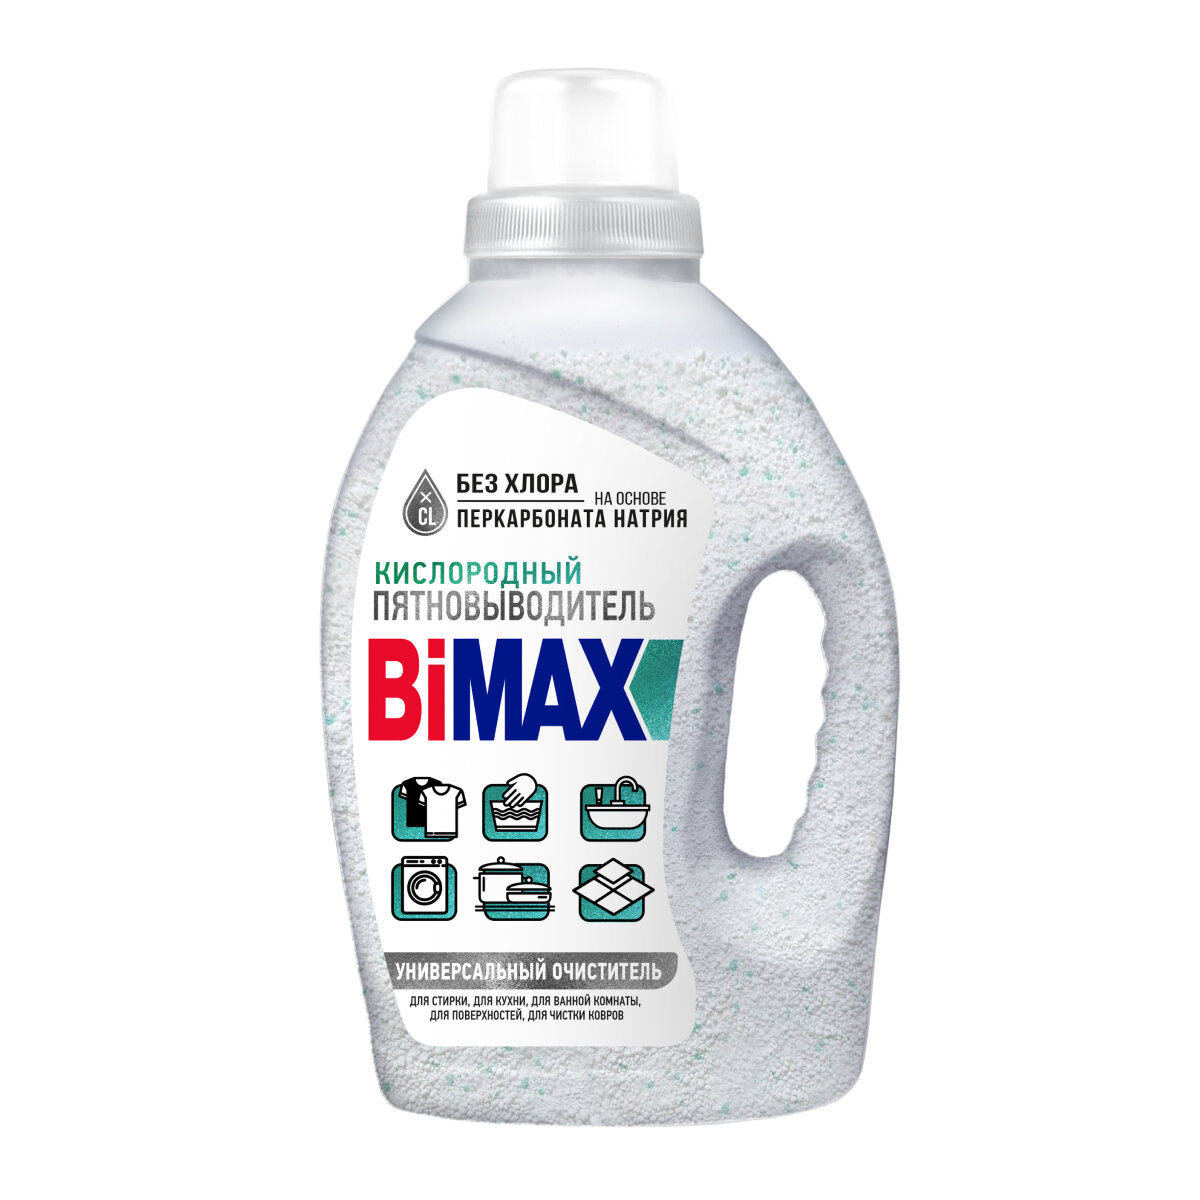 Кислородный пятновыводитель BiMAX, универсальный очиститель, 1,75 кг